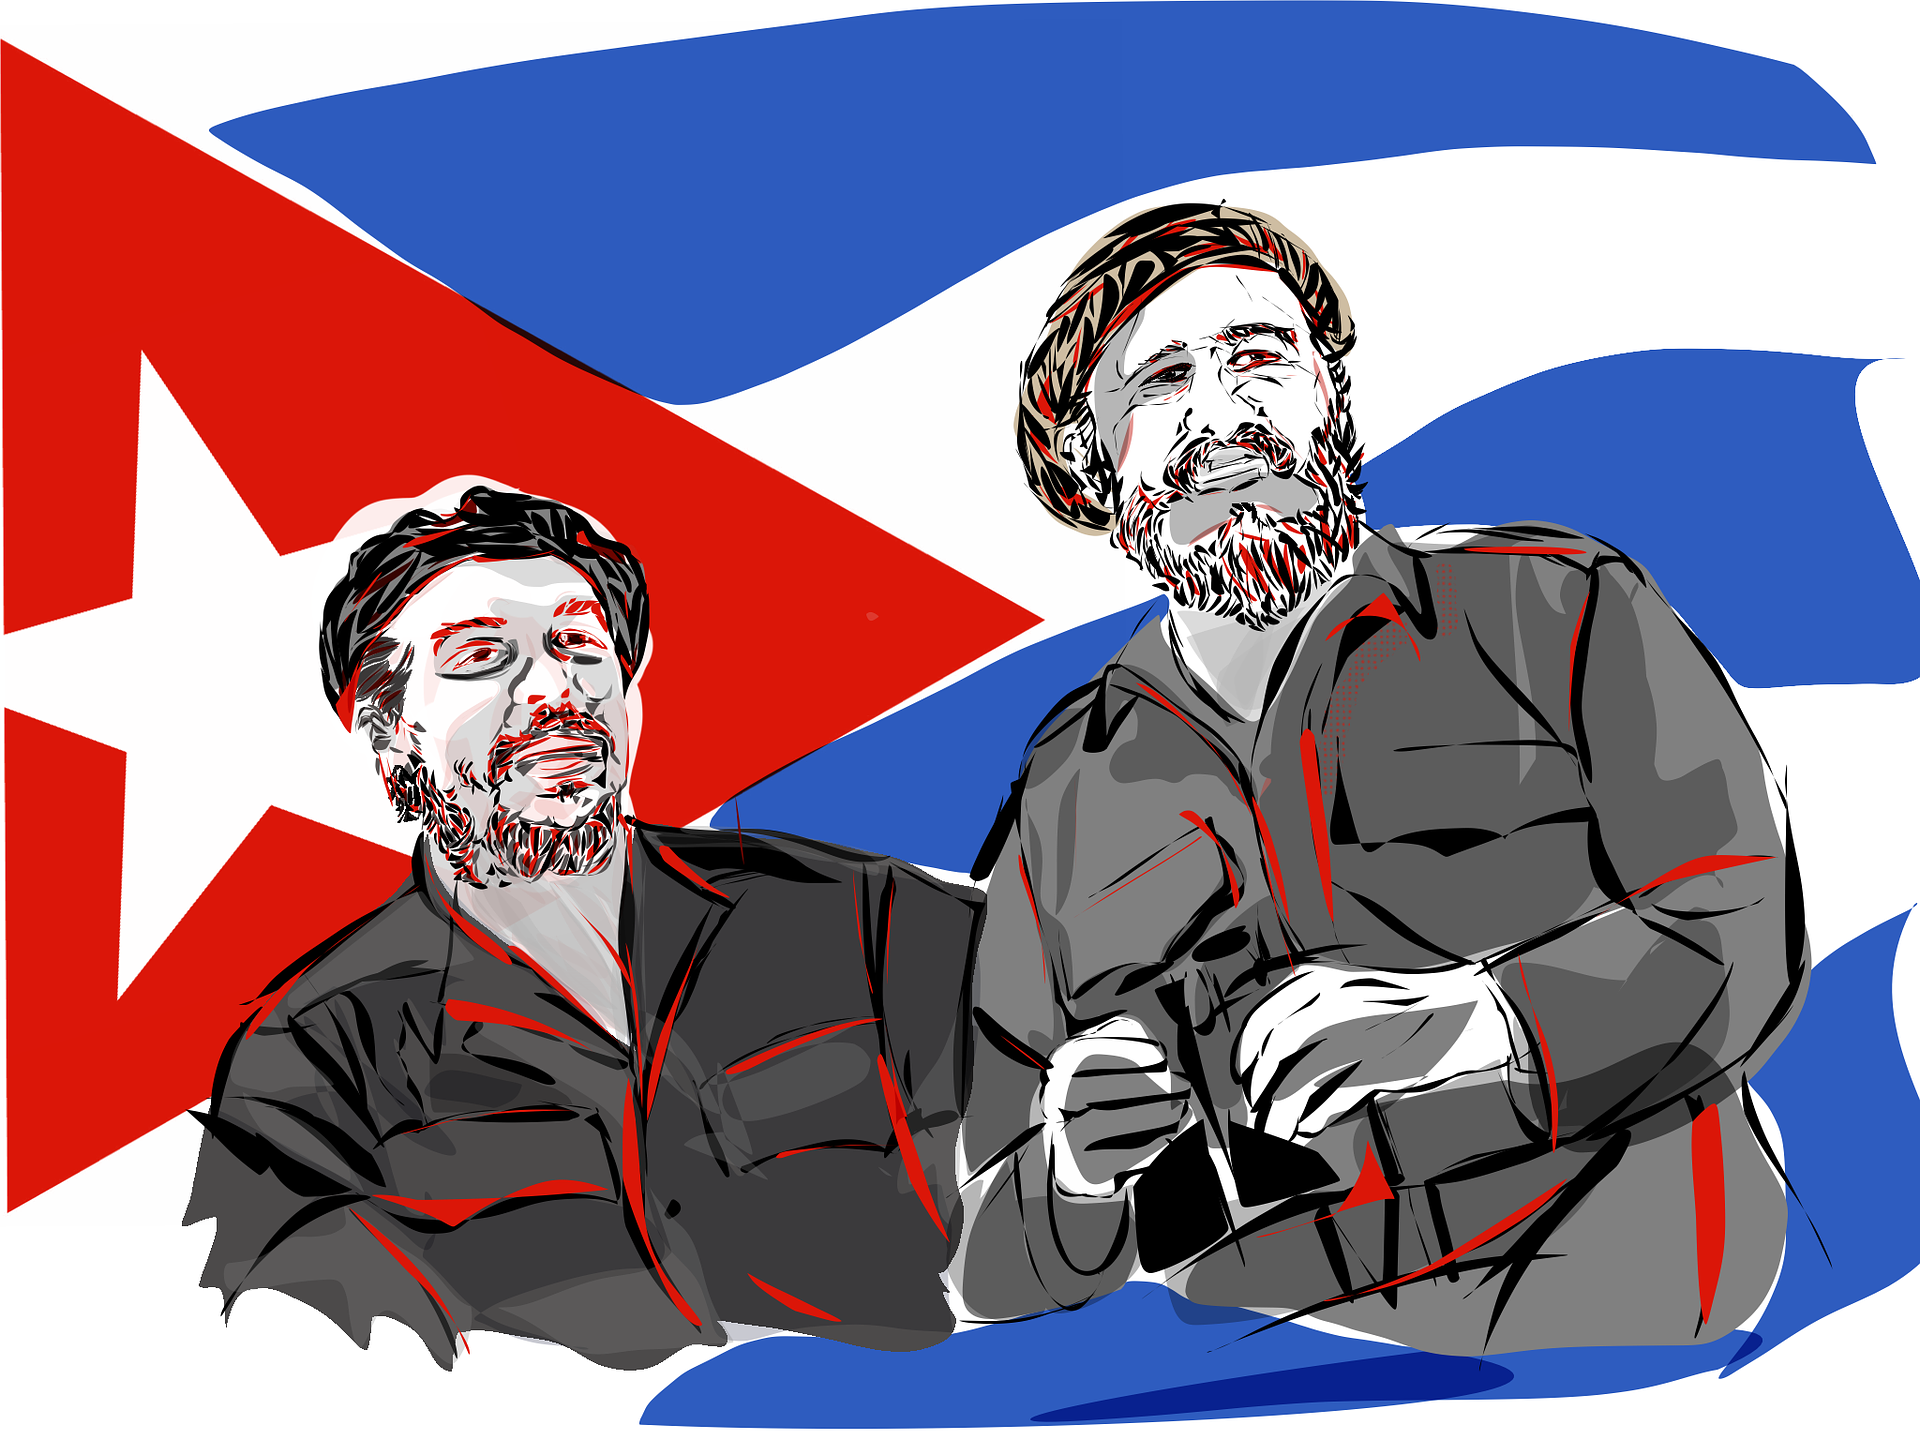 Fidel Castro, Che Guevara and the Cuban Revolution